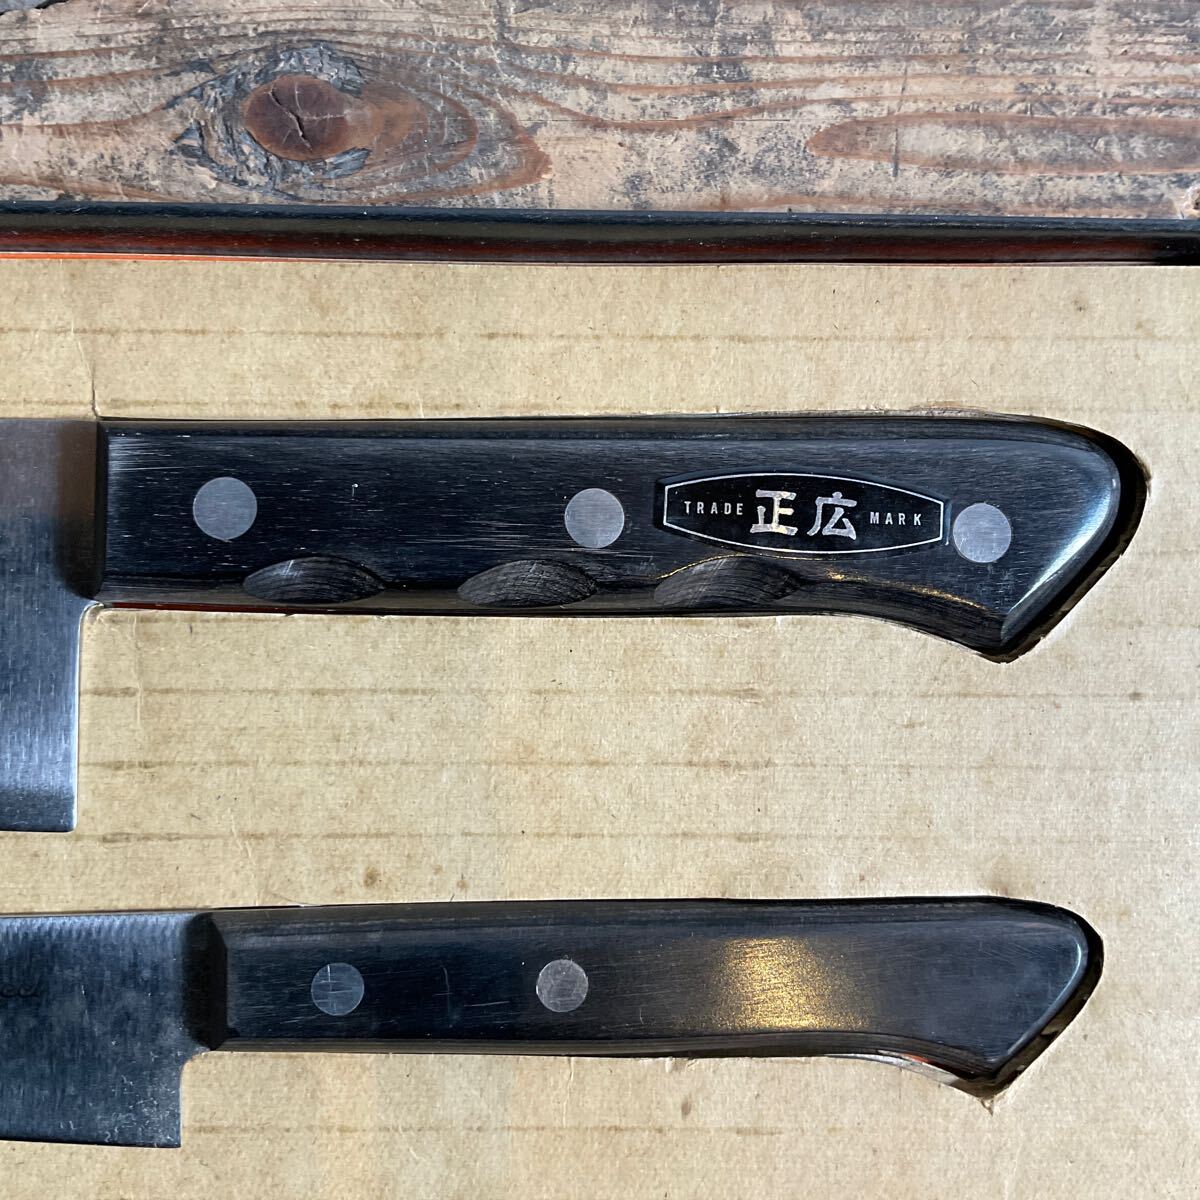 C17/ новый товар не использовался большой такой же правильный широкий кухонный нож комплект сантоку нож be чай нож многофункциональный нож нержавеющая сталь кухонный нож кухонная утварь кулинария кухонный нож 